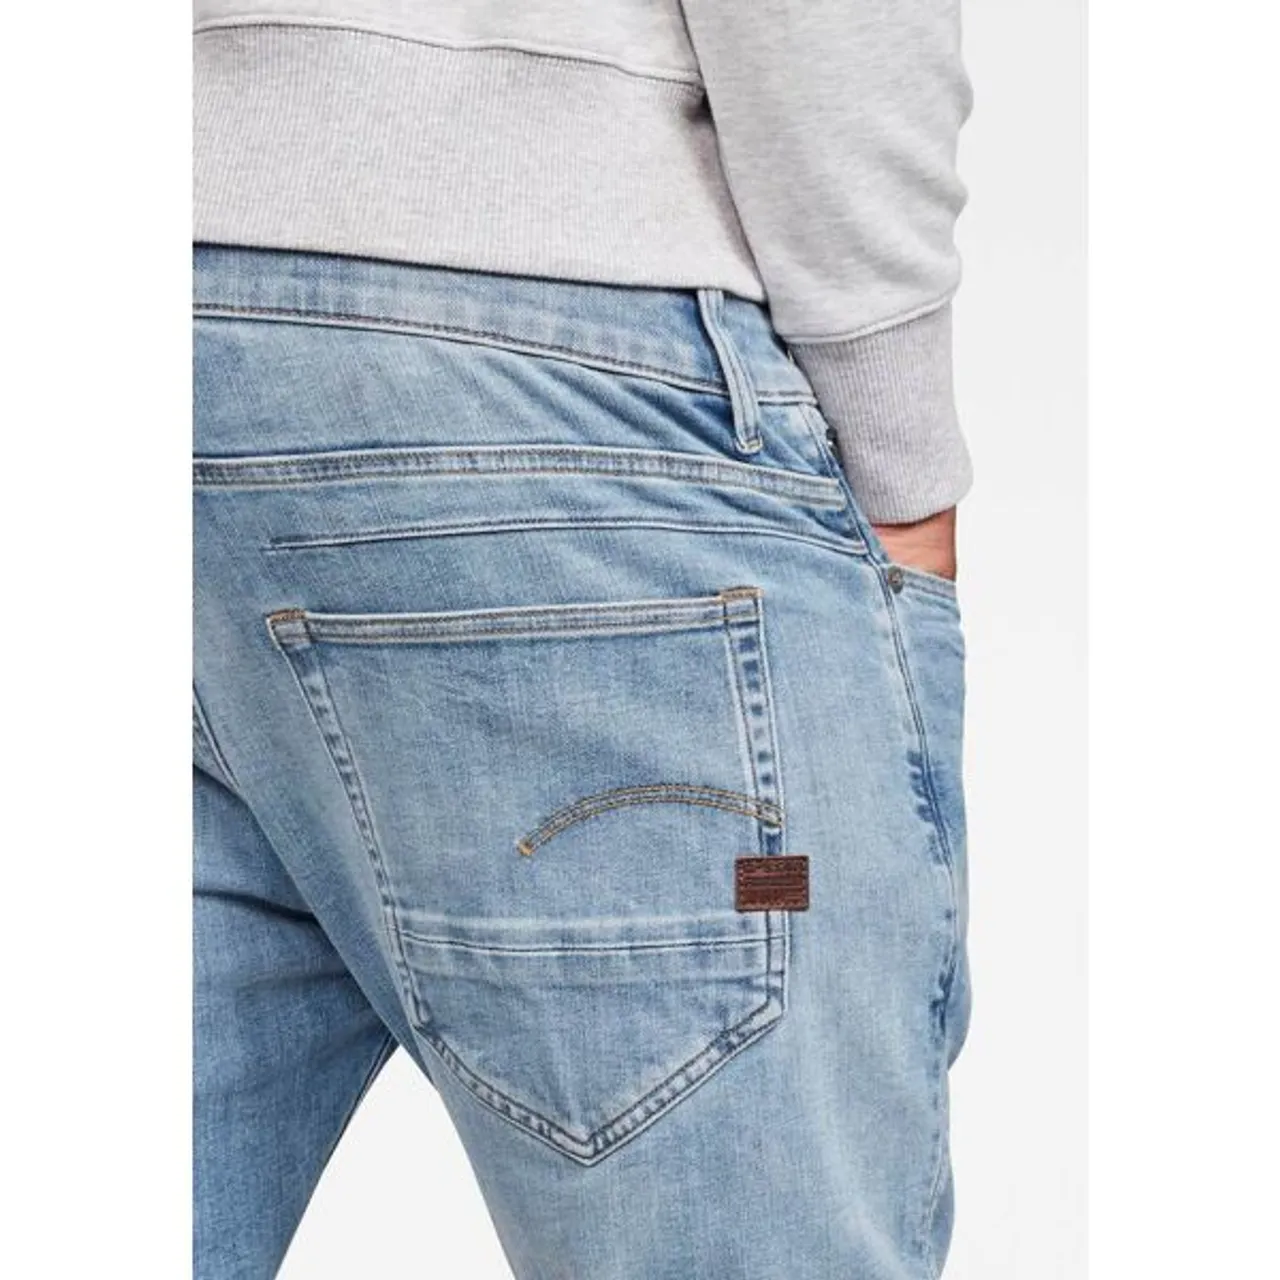 Slim-fit-Jeans G-STAR RAW "D-Staq 3D Slim Fit" Gr. 34, Länge 34, blau (light, blue) Herren Jeans Slim Fit